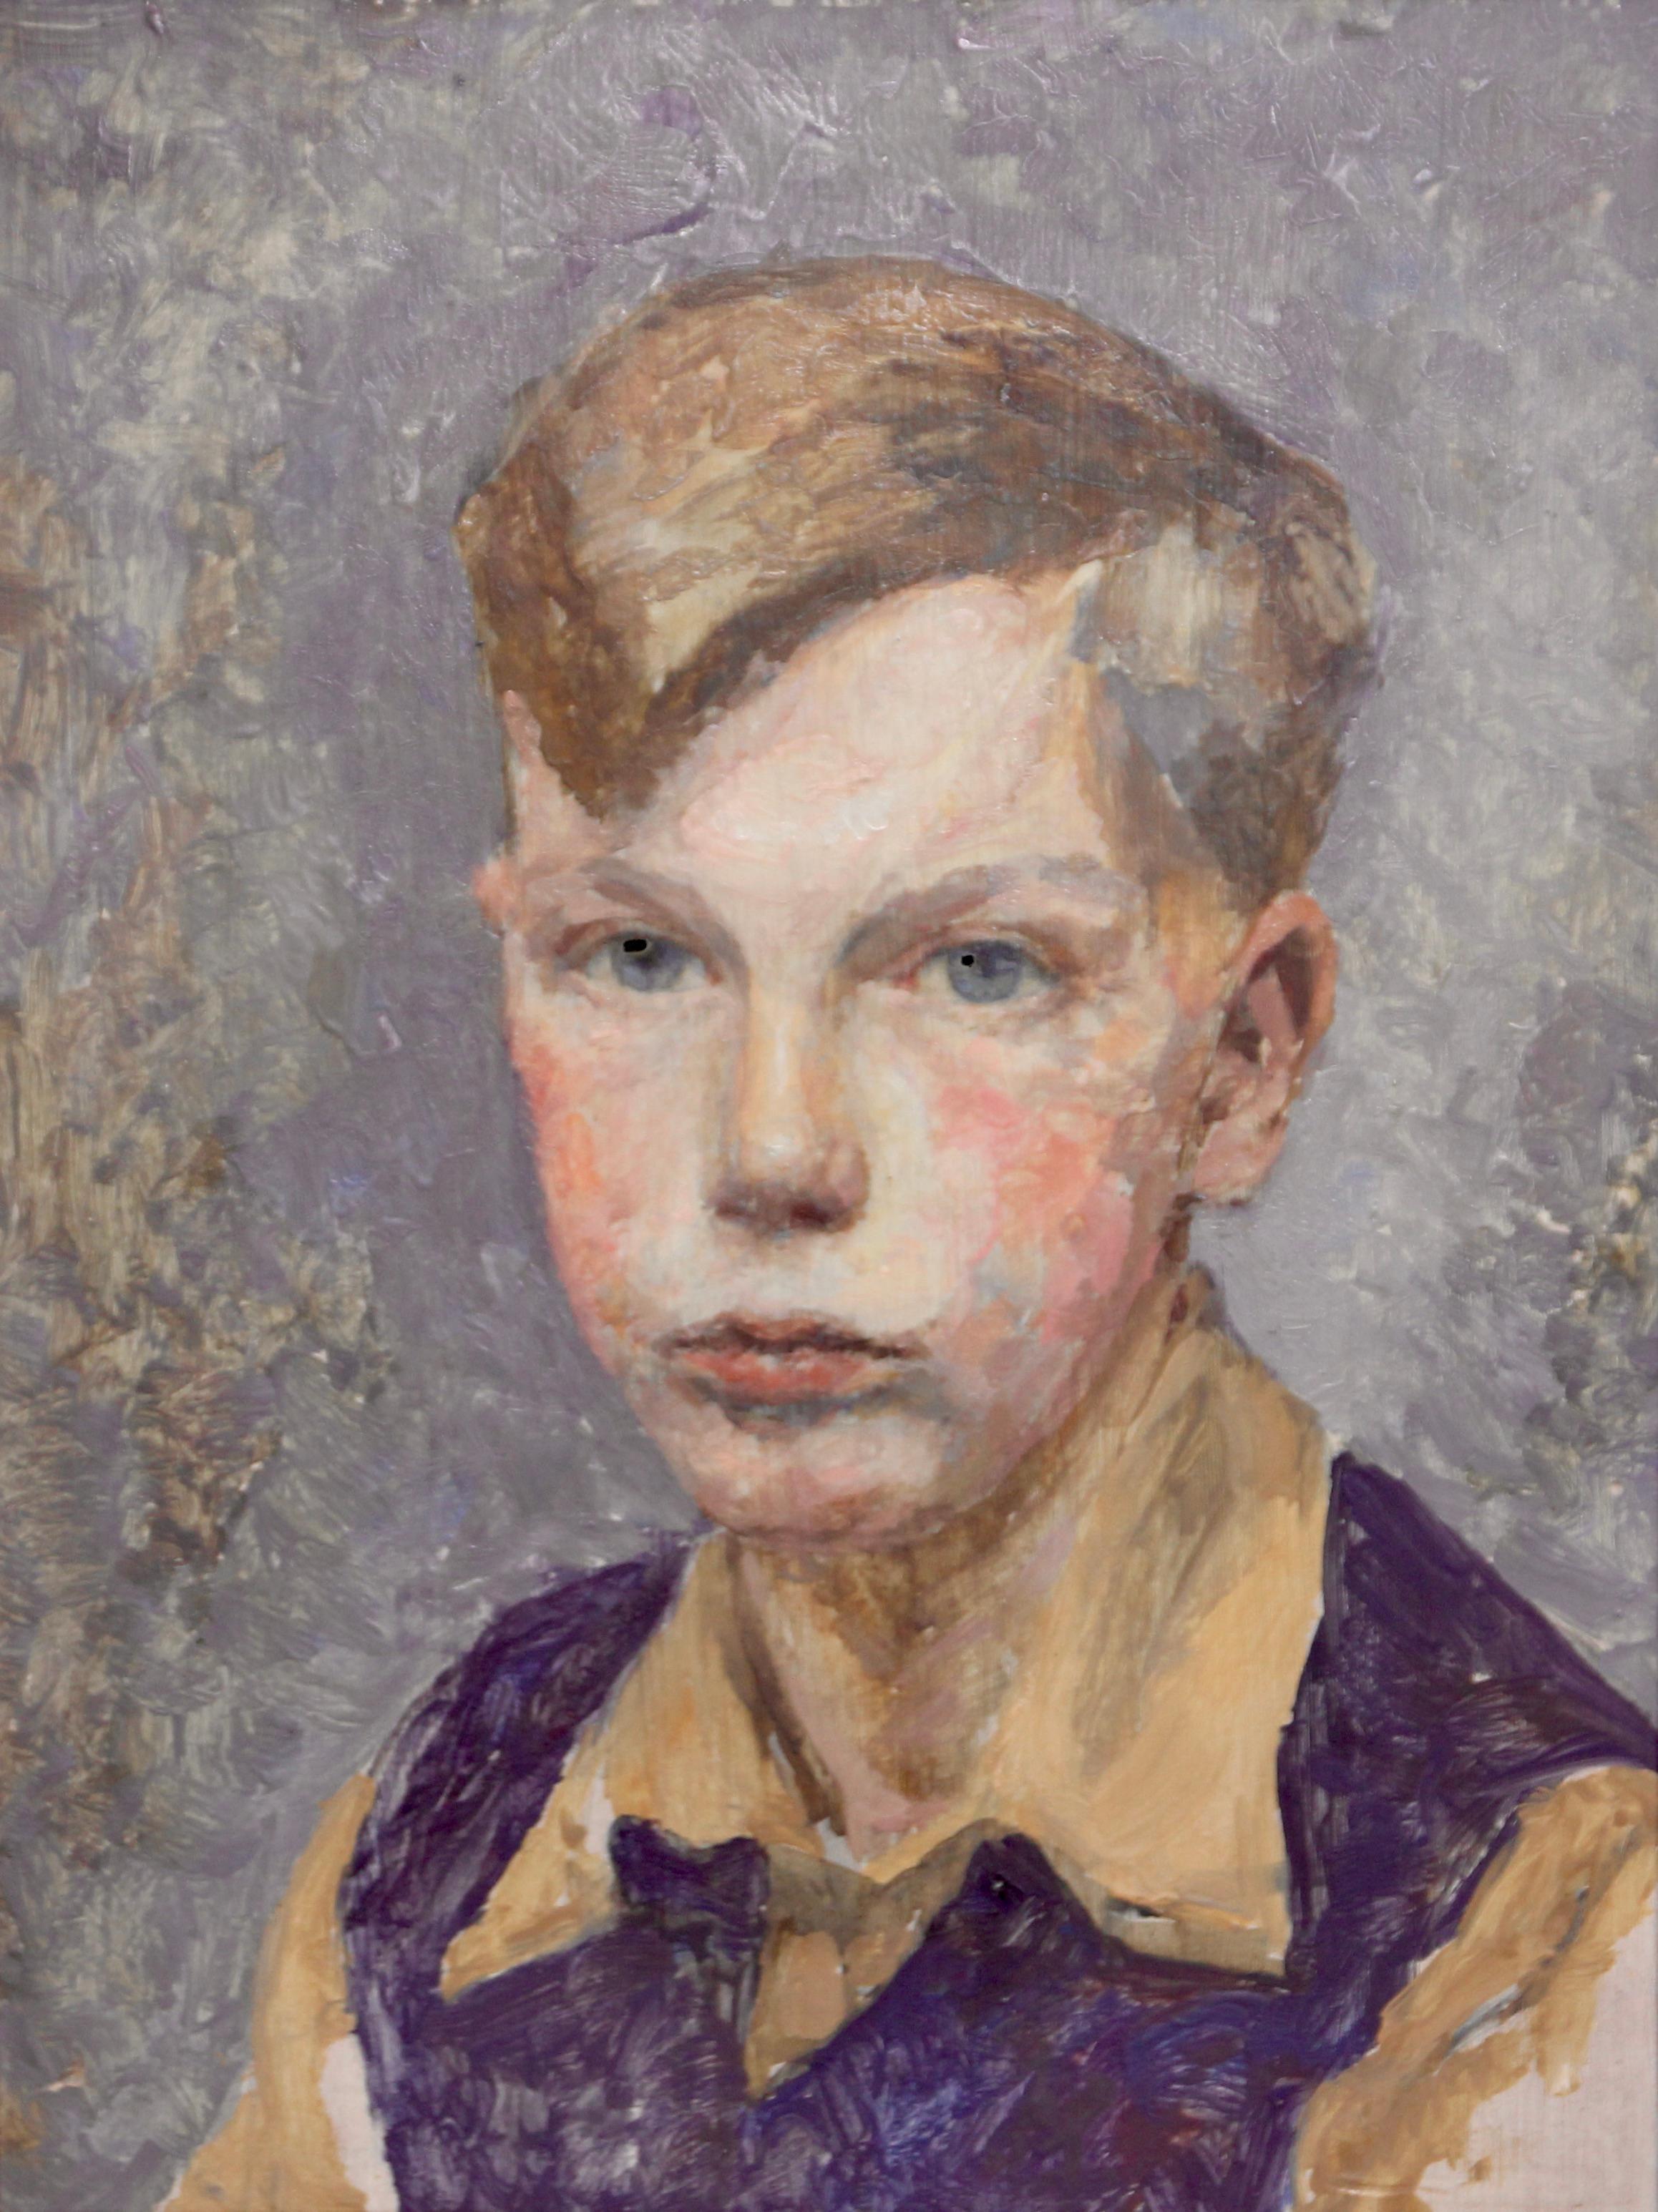 Unknown Portrait Painting – Porträt eines jungen Jungen, impressionistische Malerei.